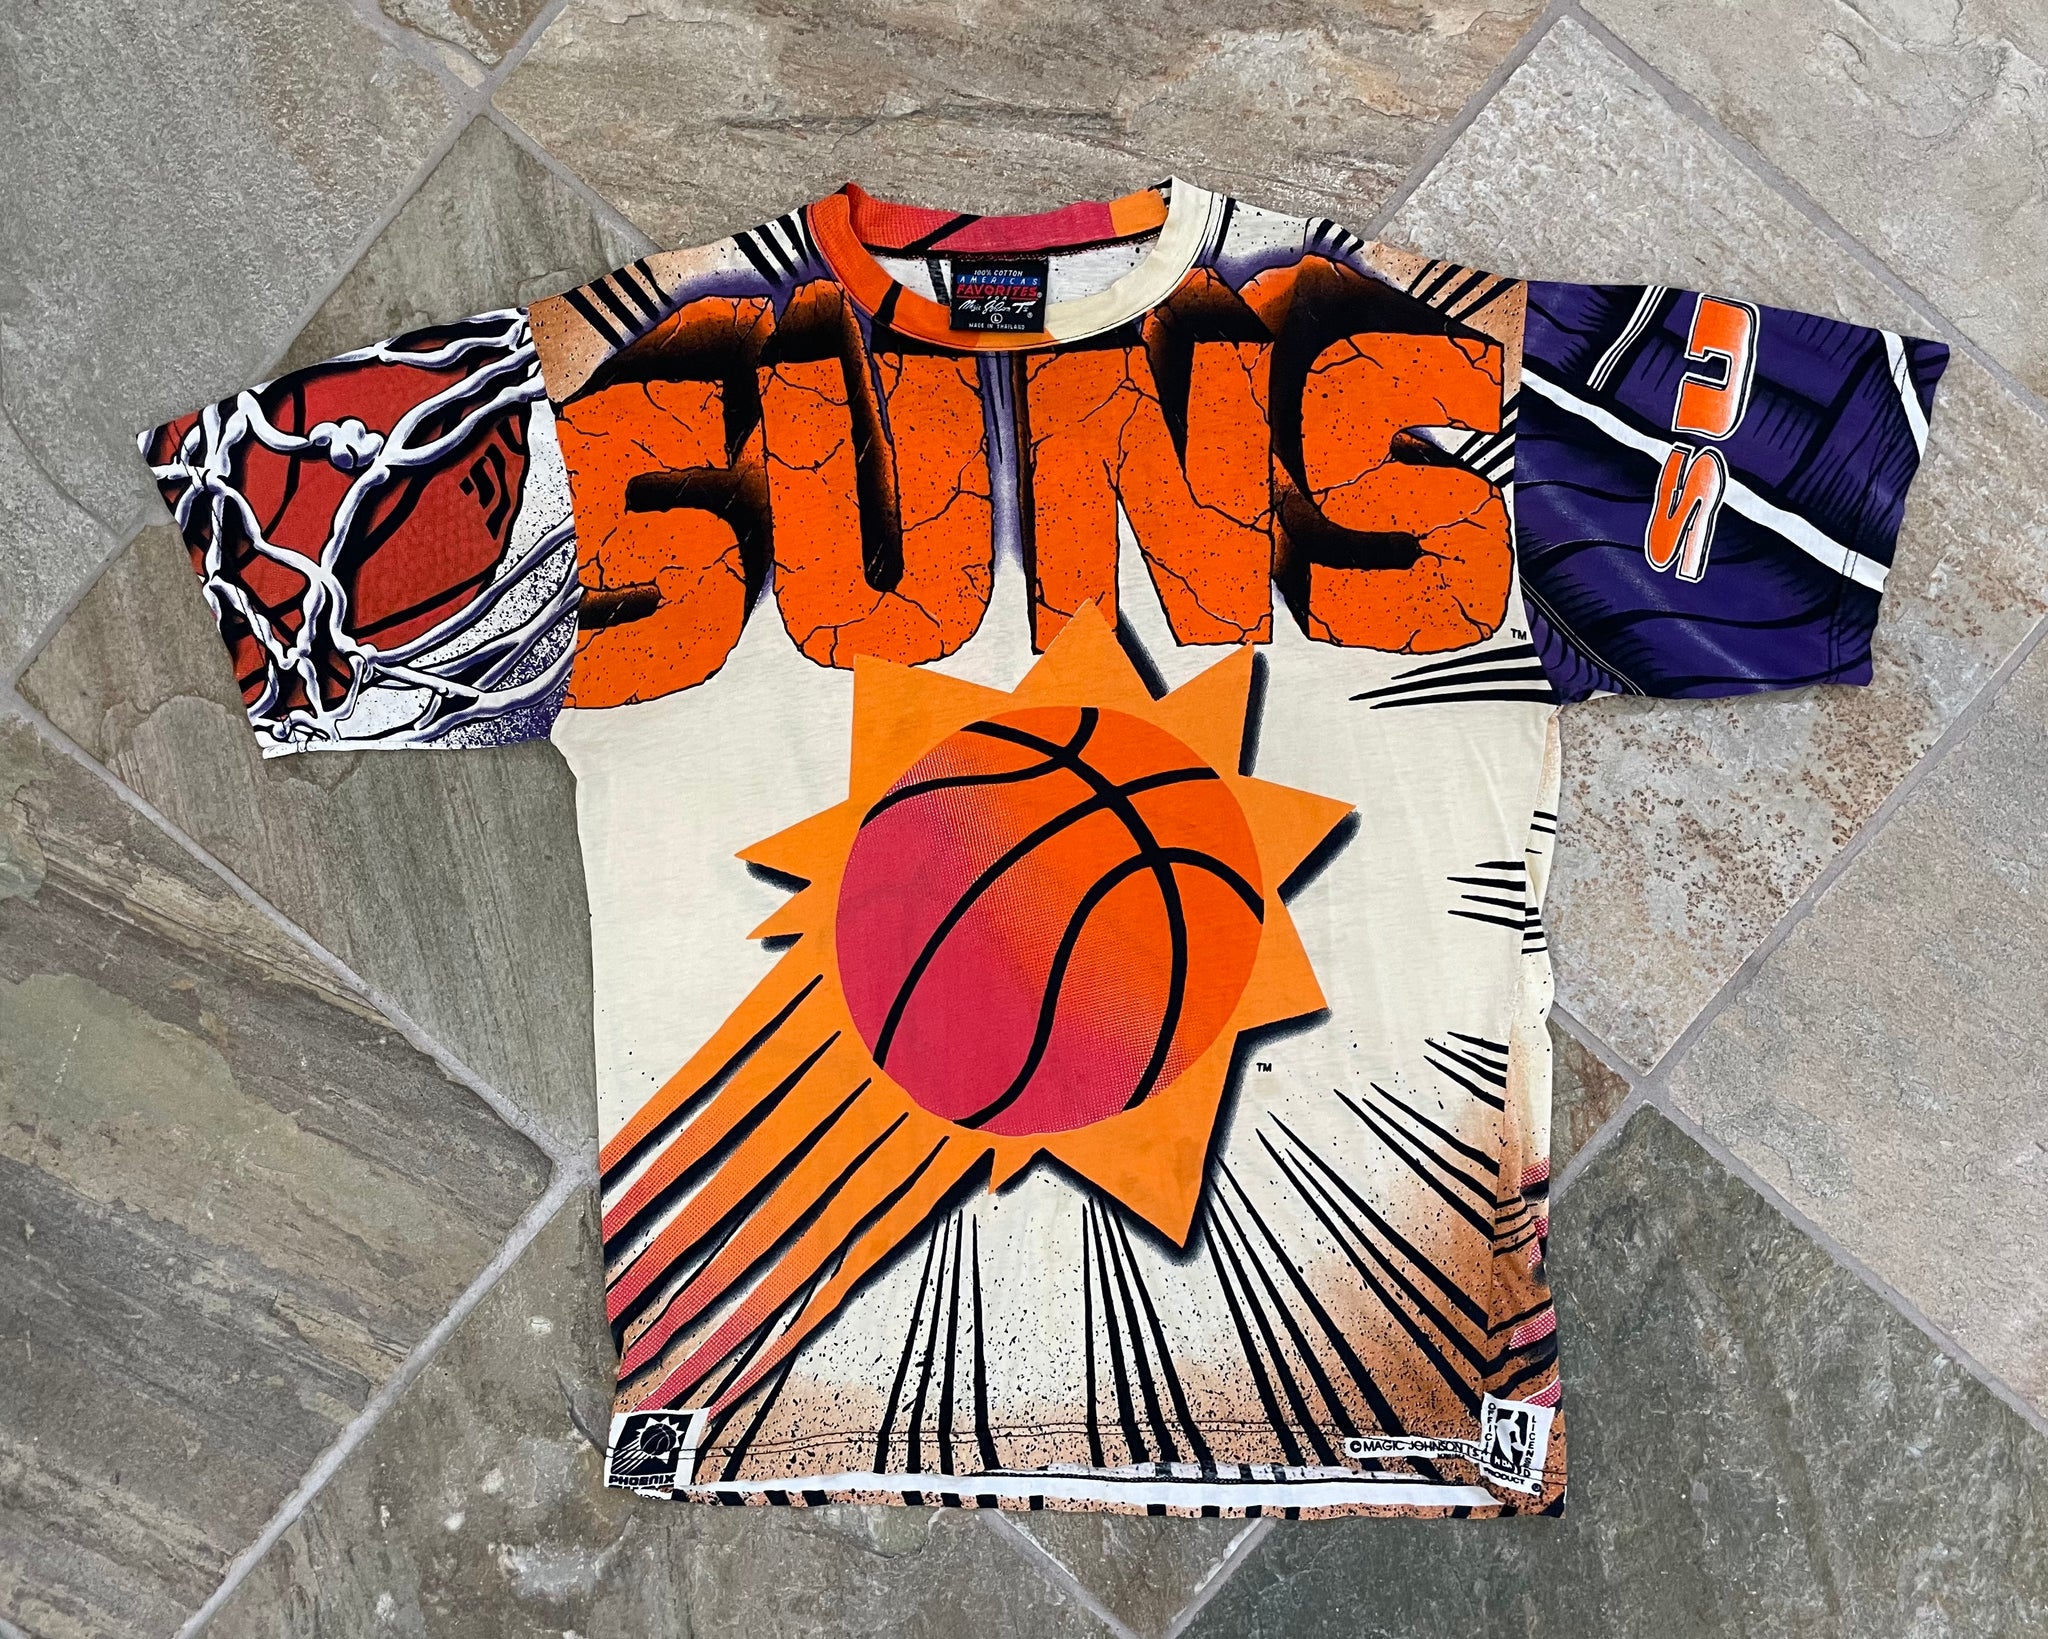 Vintage 90s Phoenix Suns NBA Magic Johnson Tee 